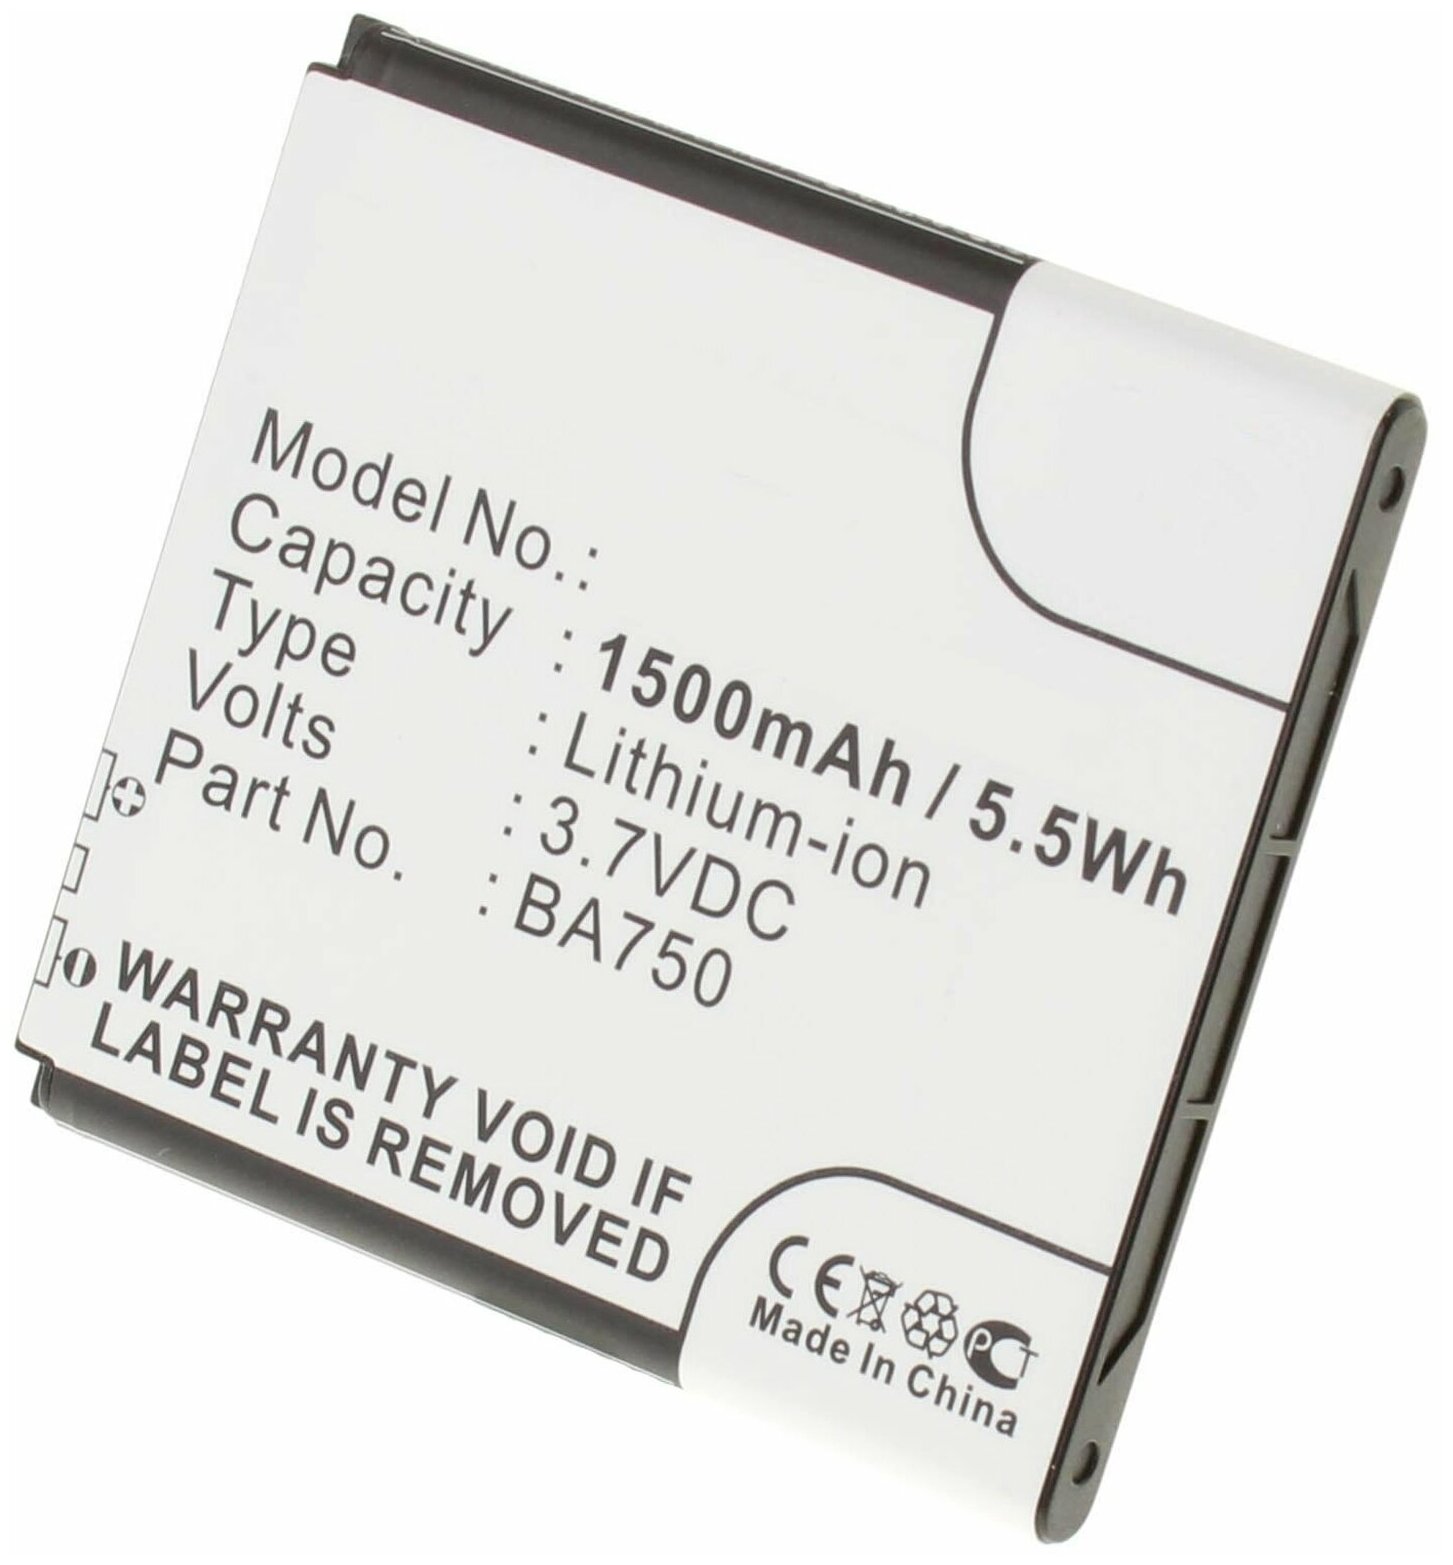 Аккумулятор iBatt iB-U2-M346 1500mAh для Sony Ericsson Xperia Acro SO-02C Anzu IS11S LT18A peria X12 Xperia Acro IS11S